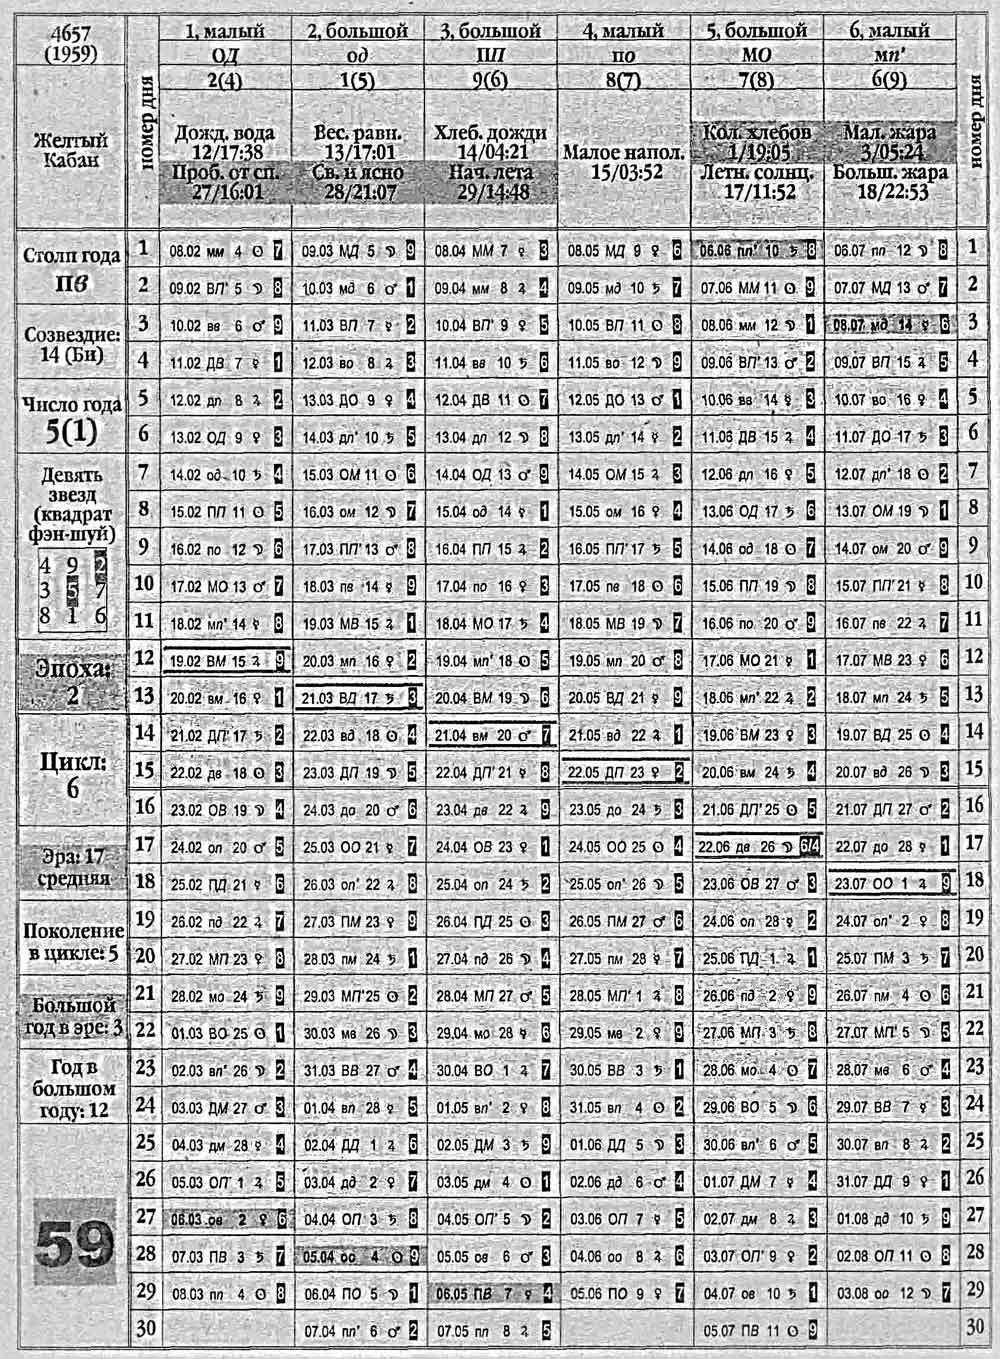 Китайский календарь 1959 года